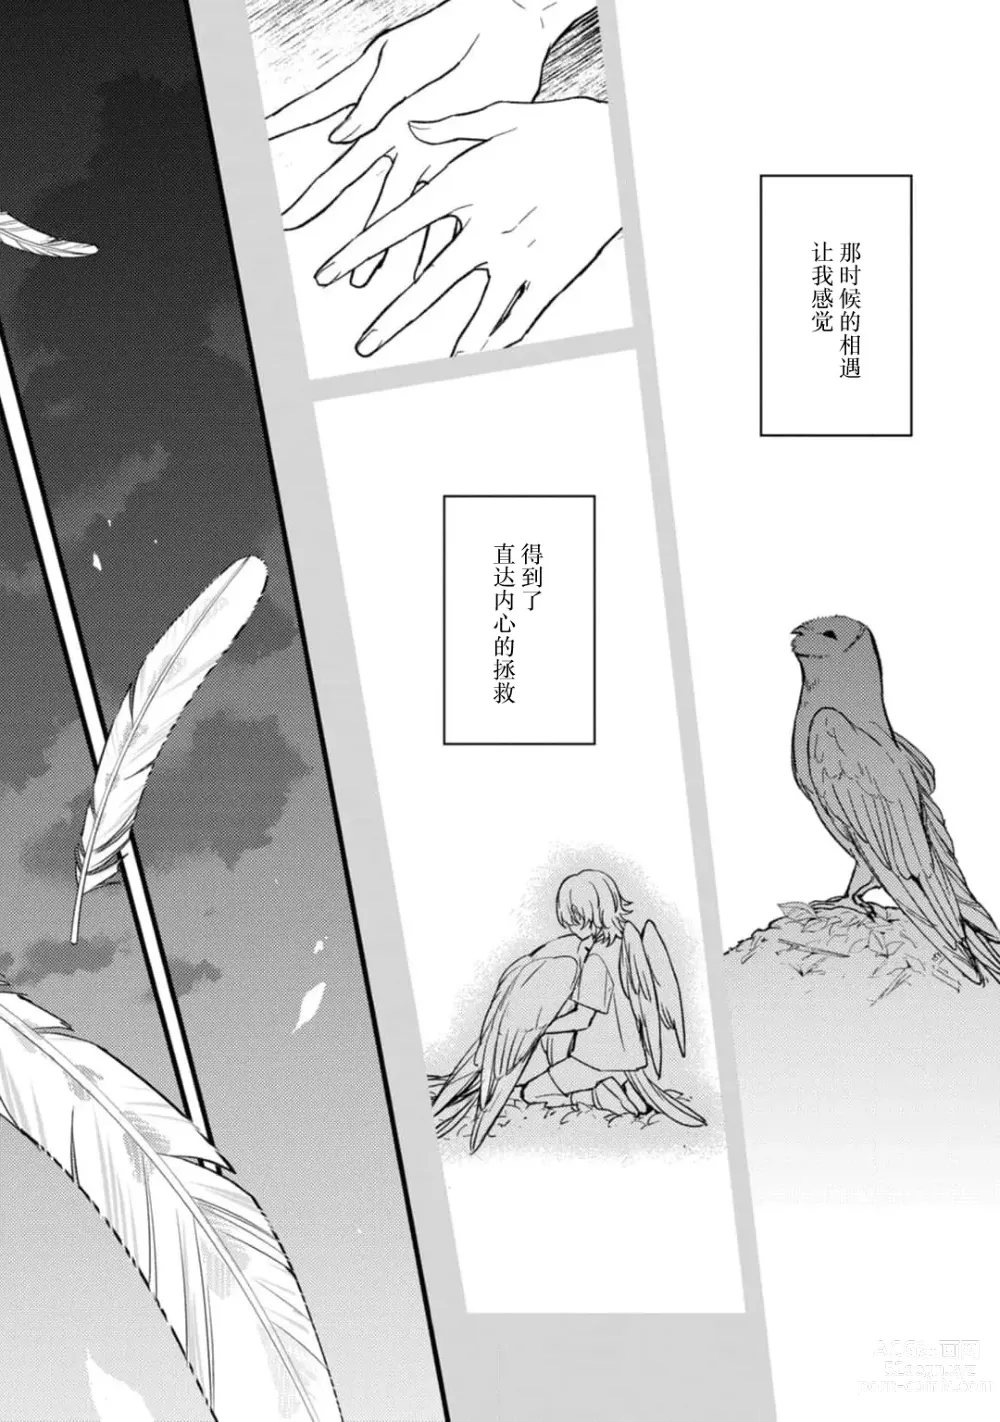 Page 3 of manga 枭与夜想曲 act. 1